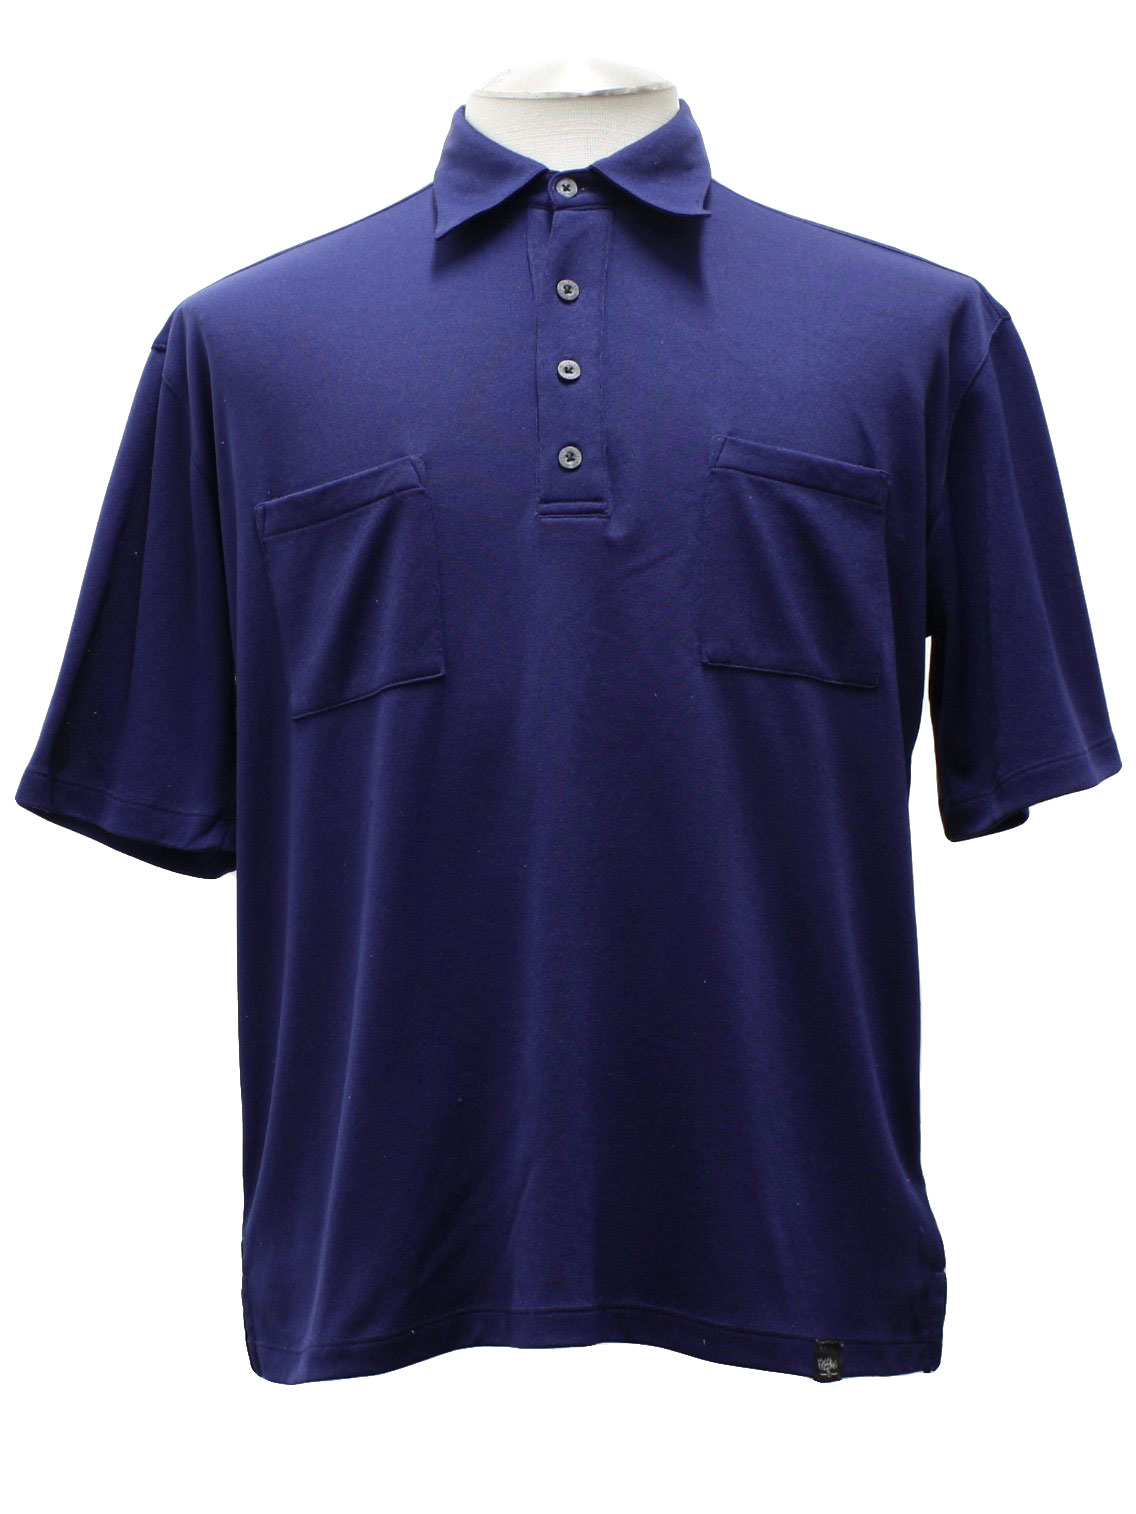 Retro 1990's Shirt (Mossimo) : 90s -Mossimo- Mens navy blue short ...